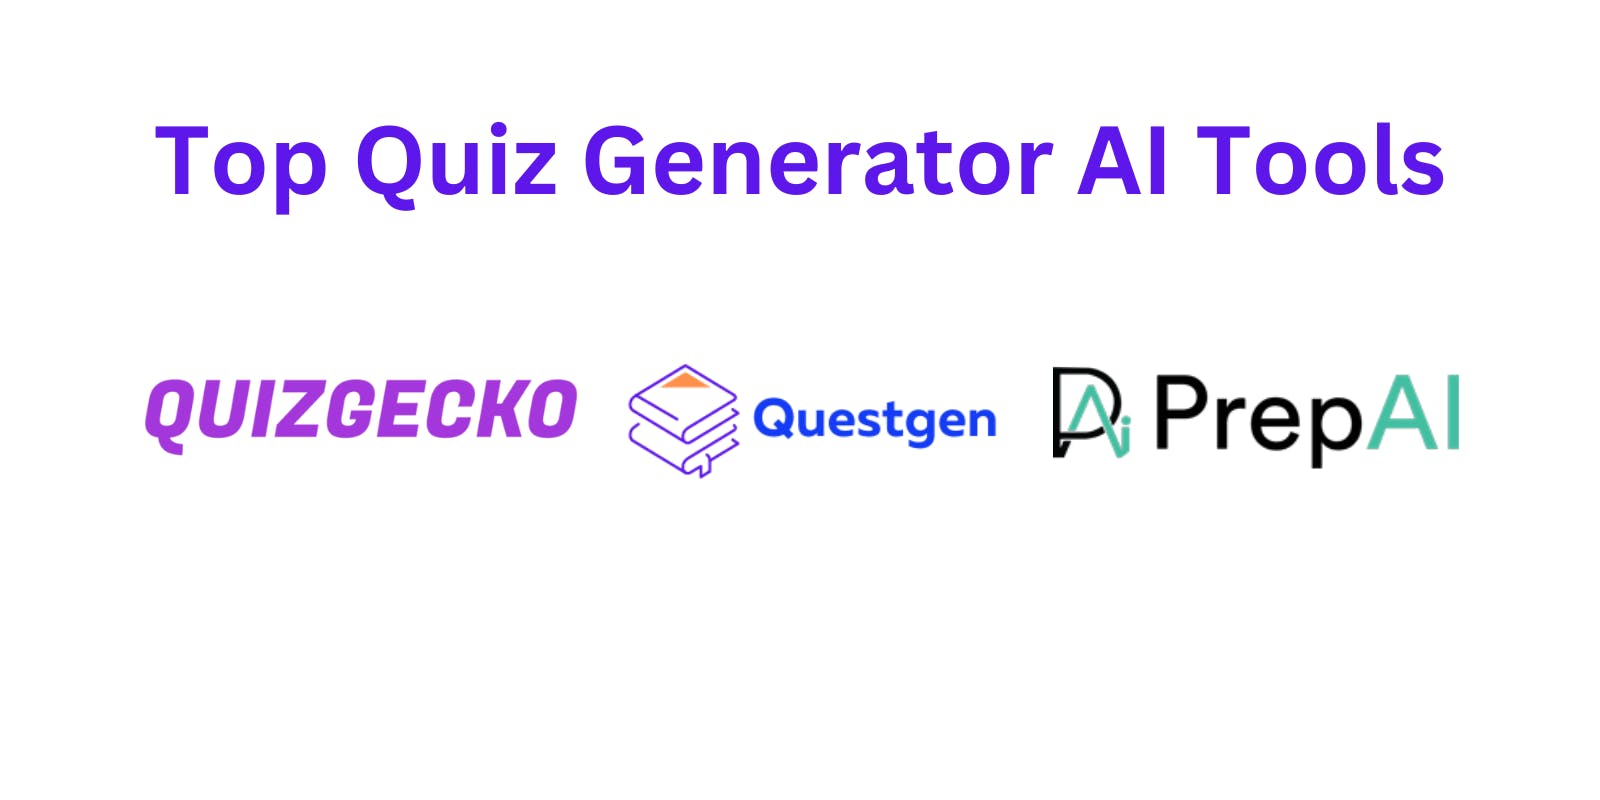 Top Quiz Generator AI Tools: QuizGecko, Questgen, PrepAI - Comparison & Review